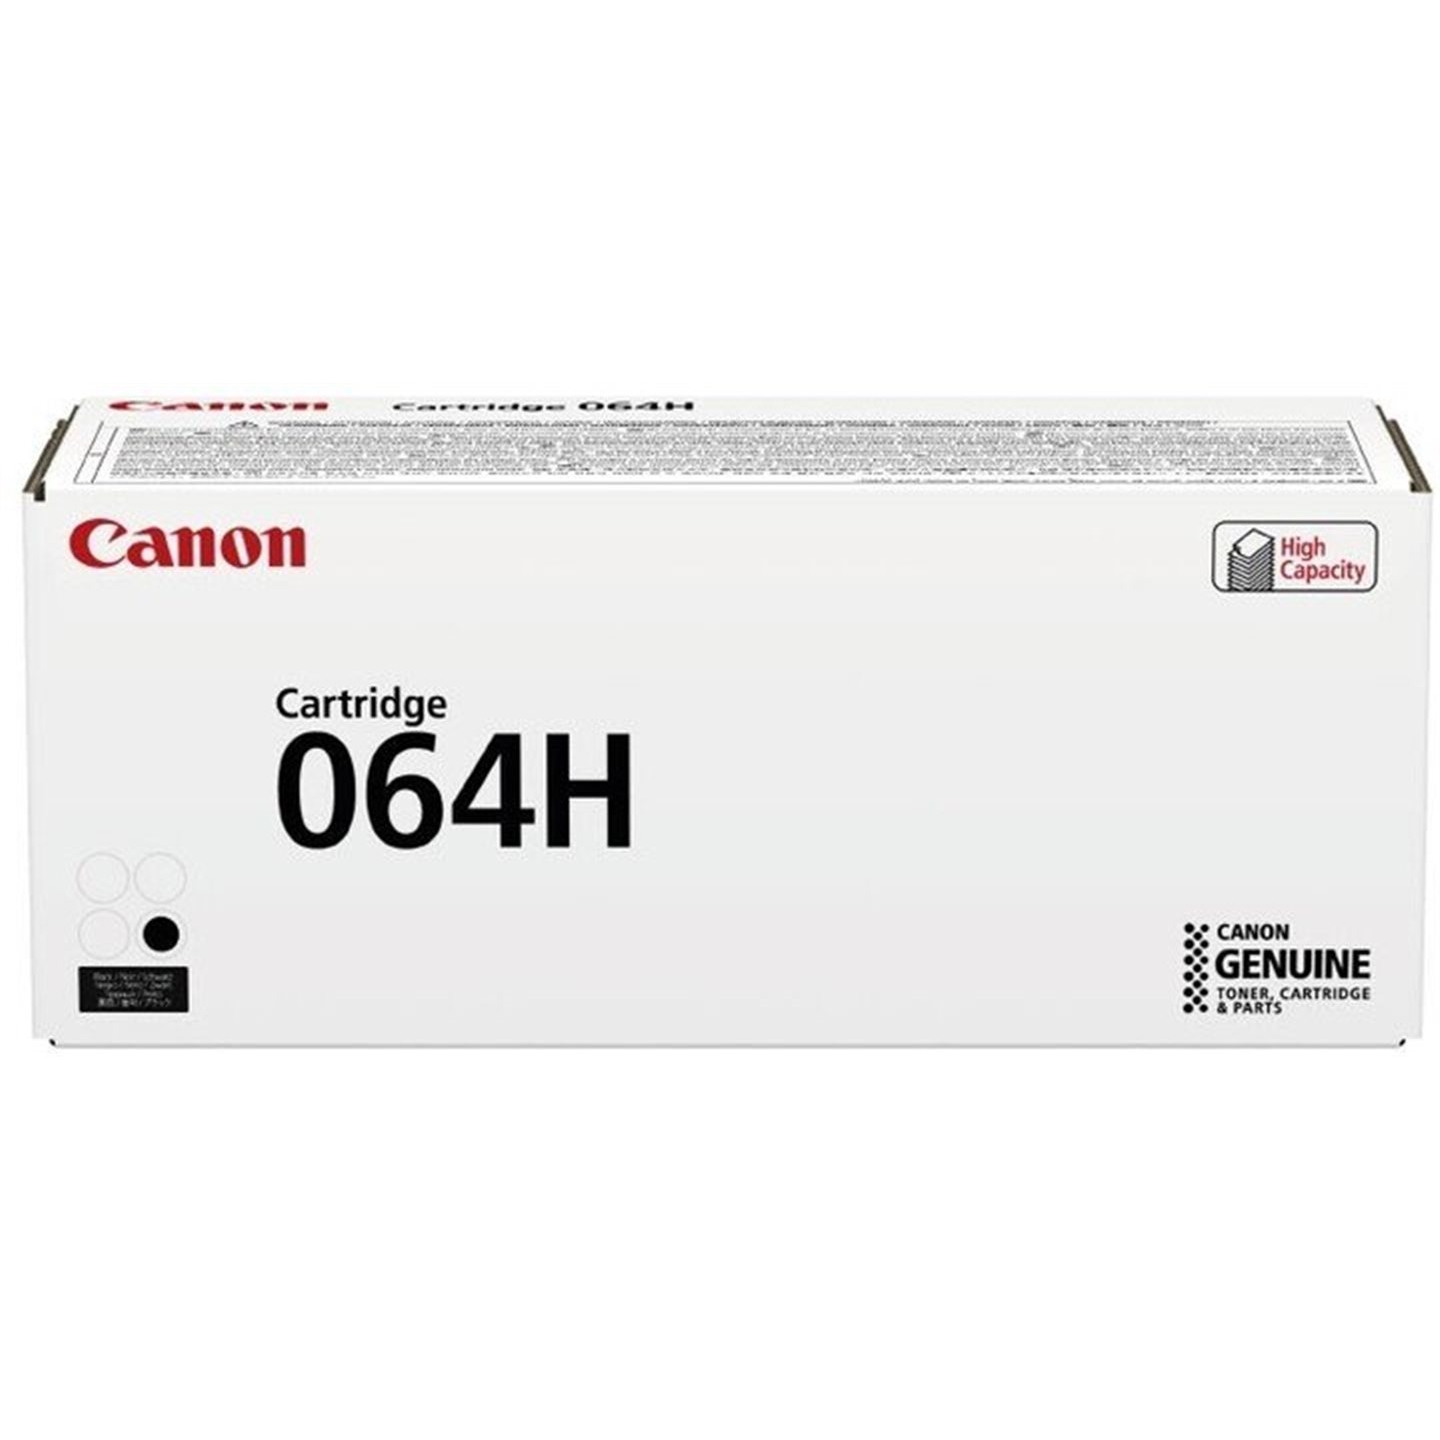 Toner Canon 064HBK, i-SENSYS MF832Cdw, black, 4938C001, originál